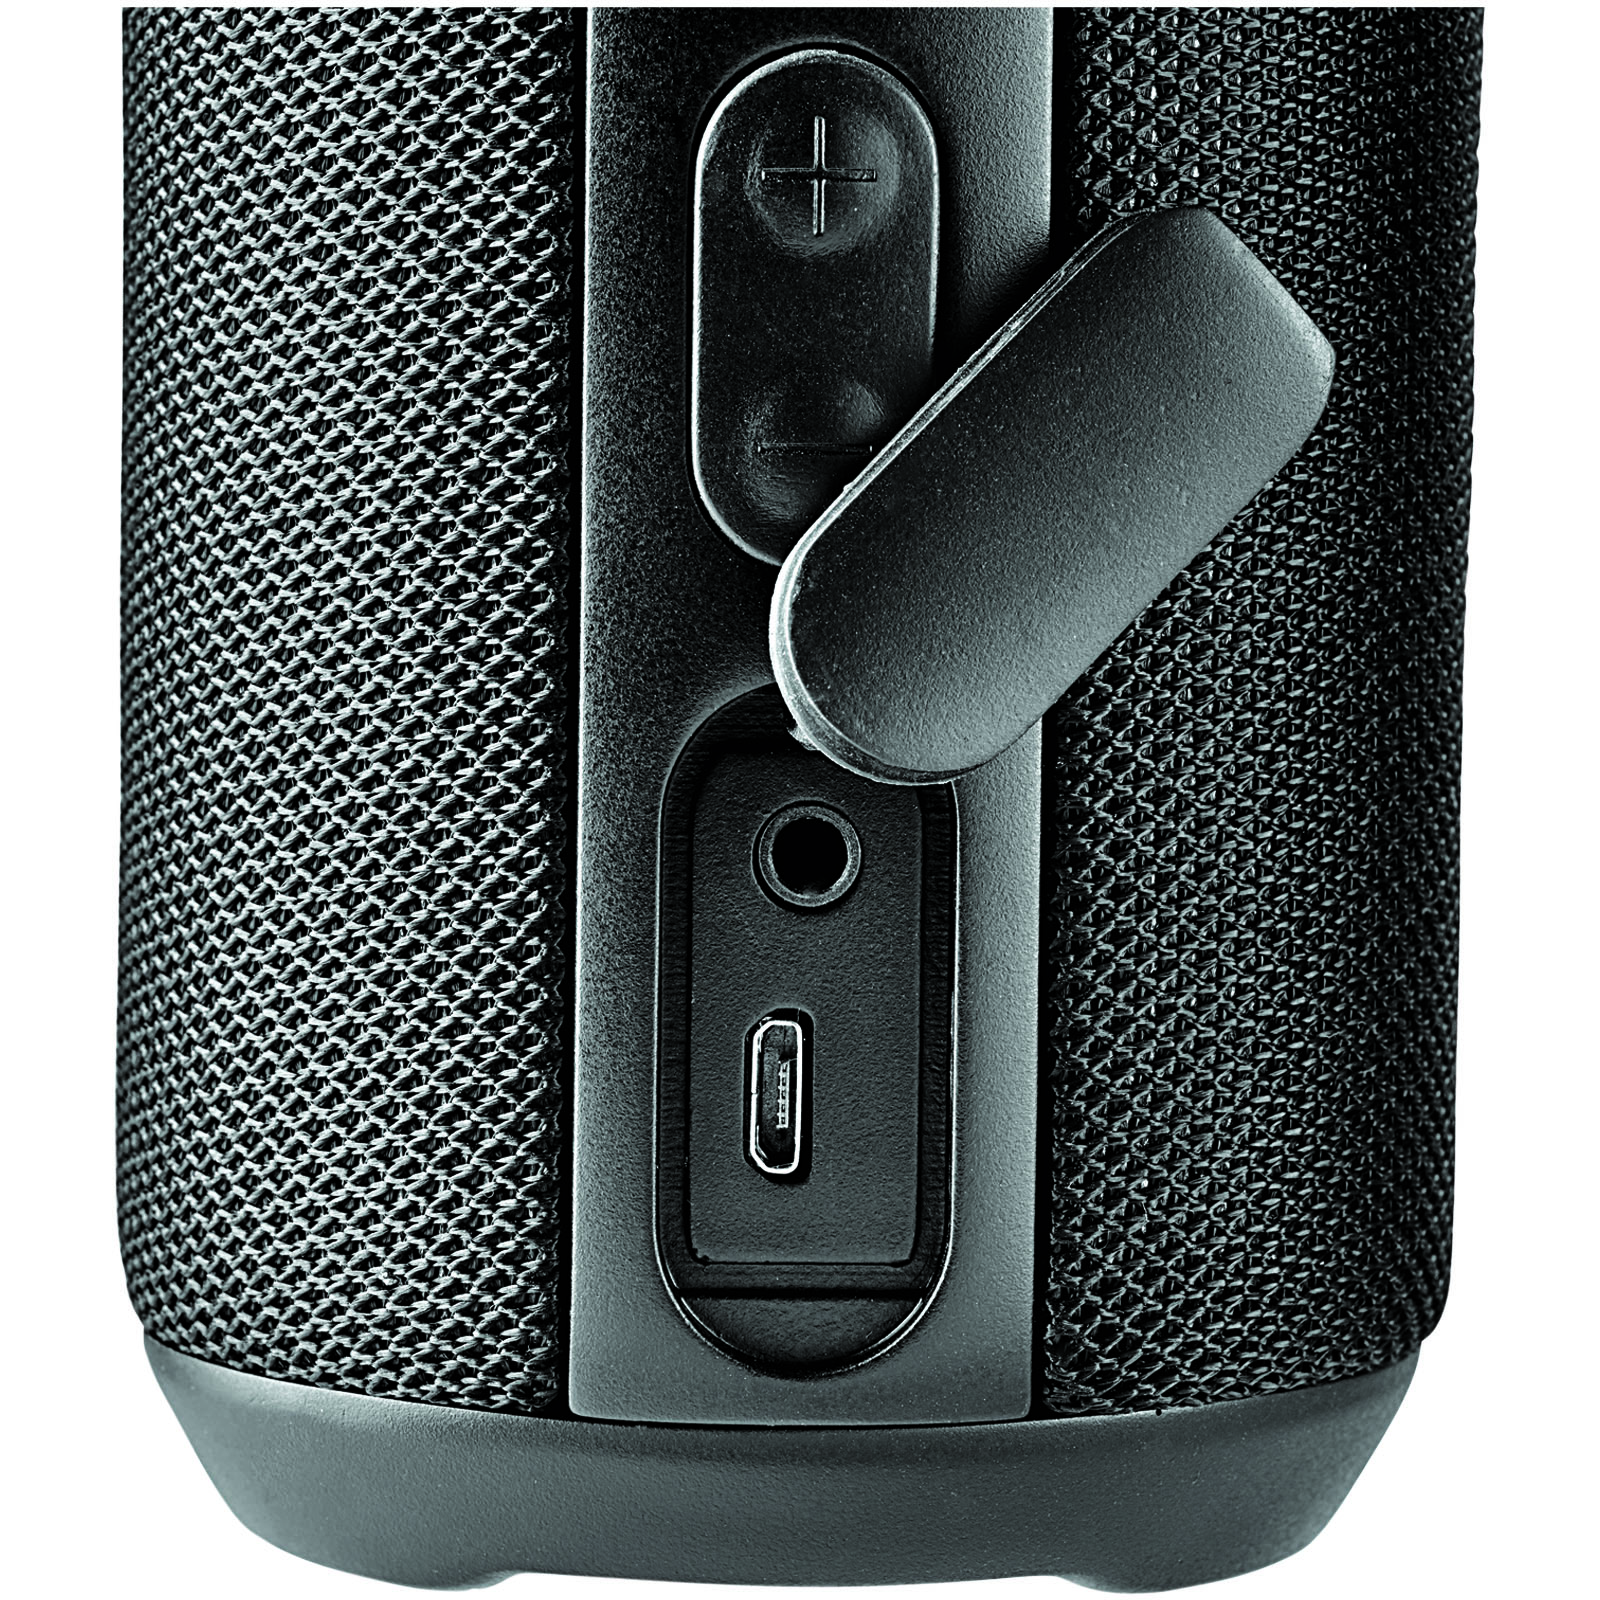 Advertising Speakers - Rugged fabric waterproof Bluetooth® speaker - 7